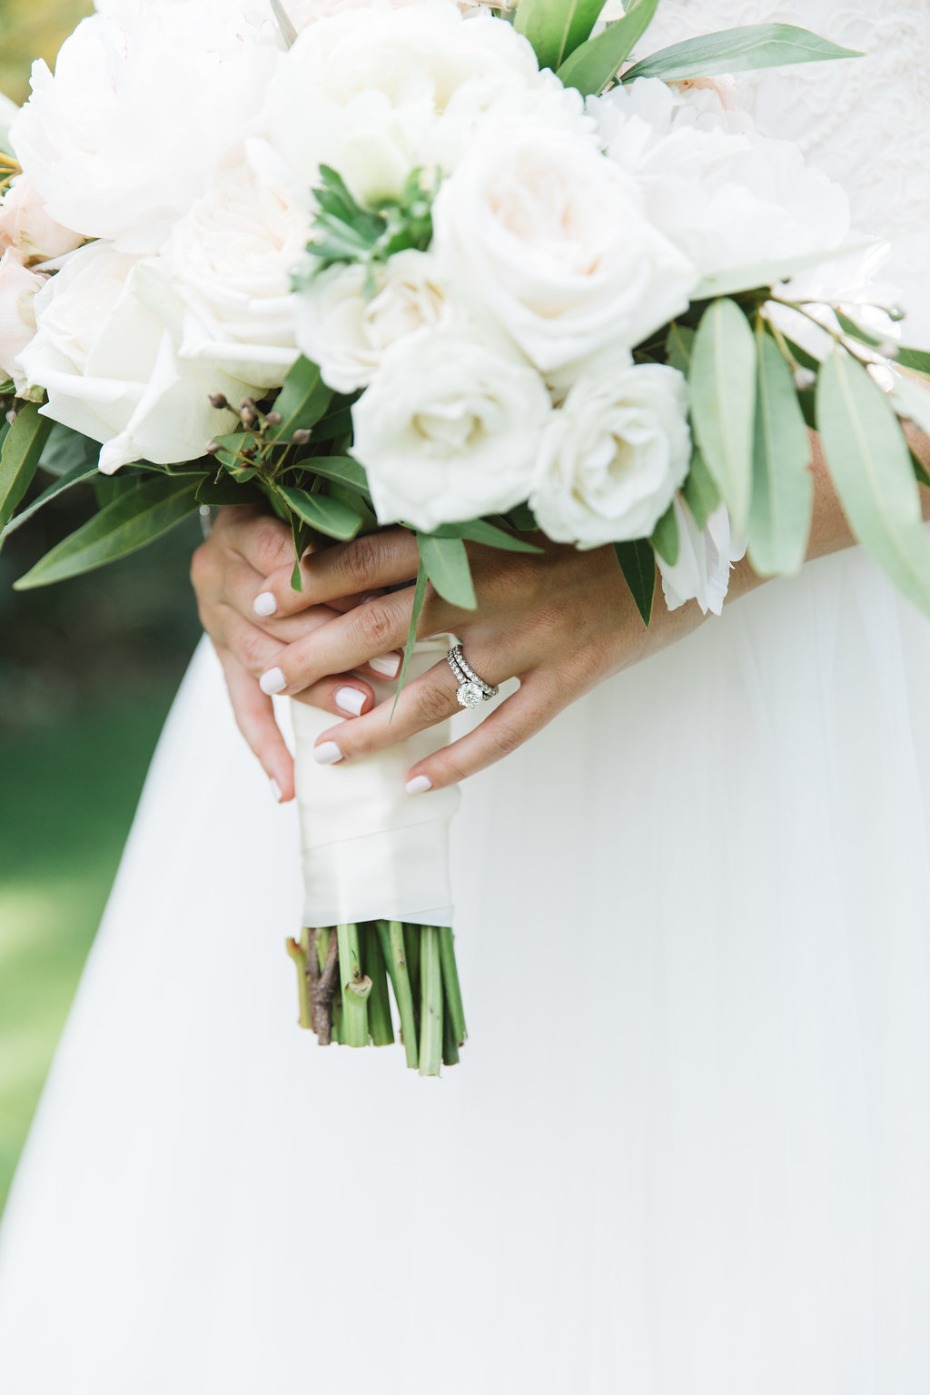 Bridal nails and ring